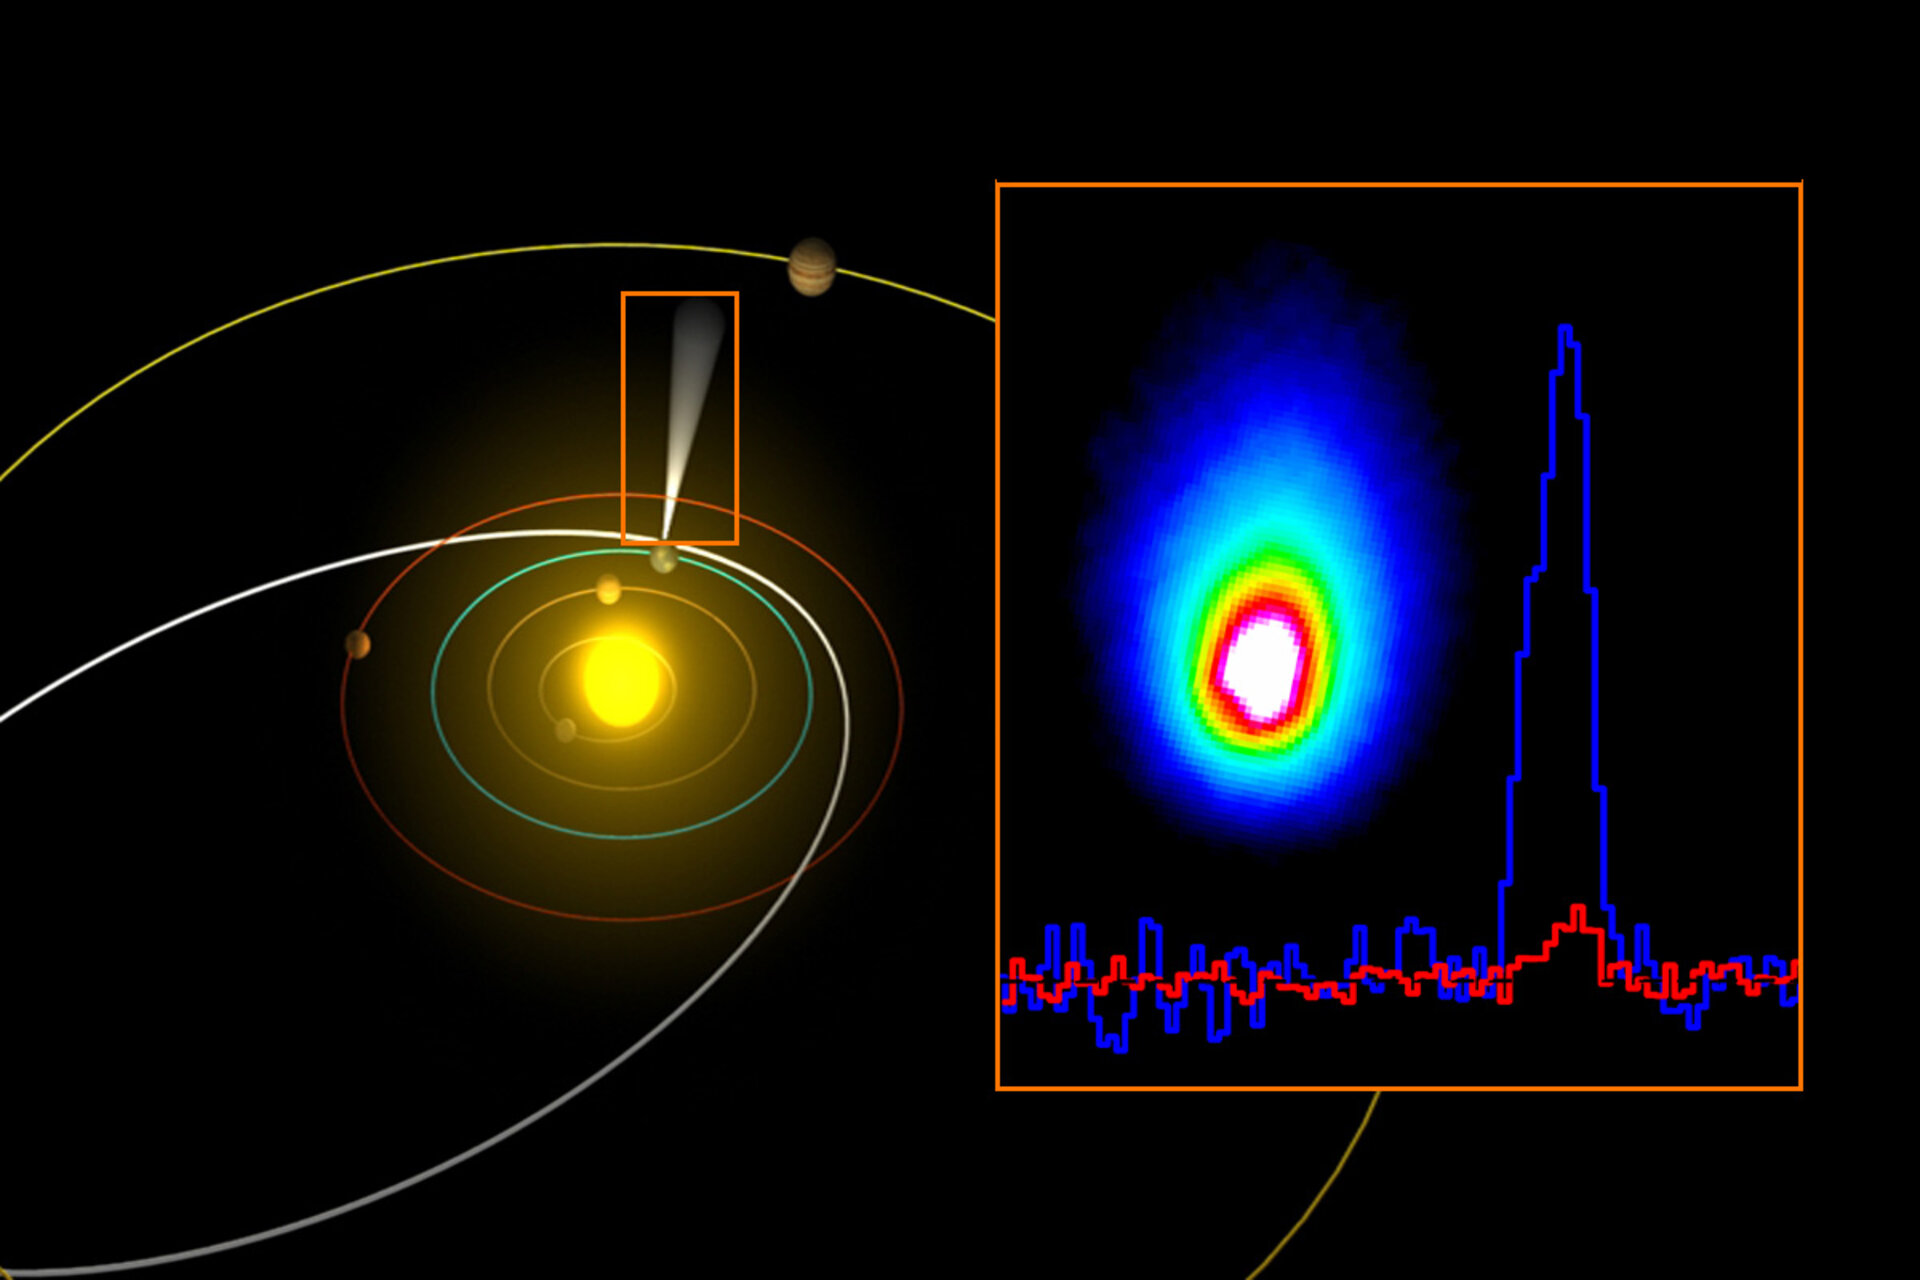 Comet Hartley 2 observed by ESA’s Herschel